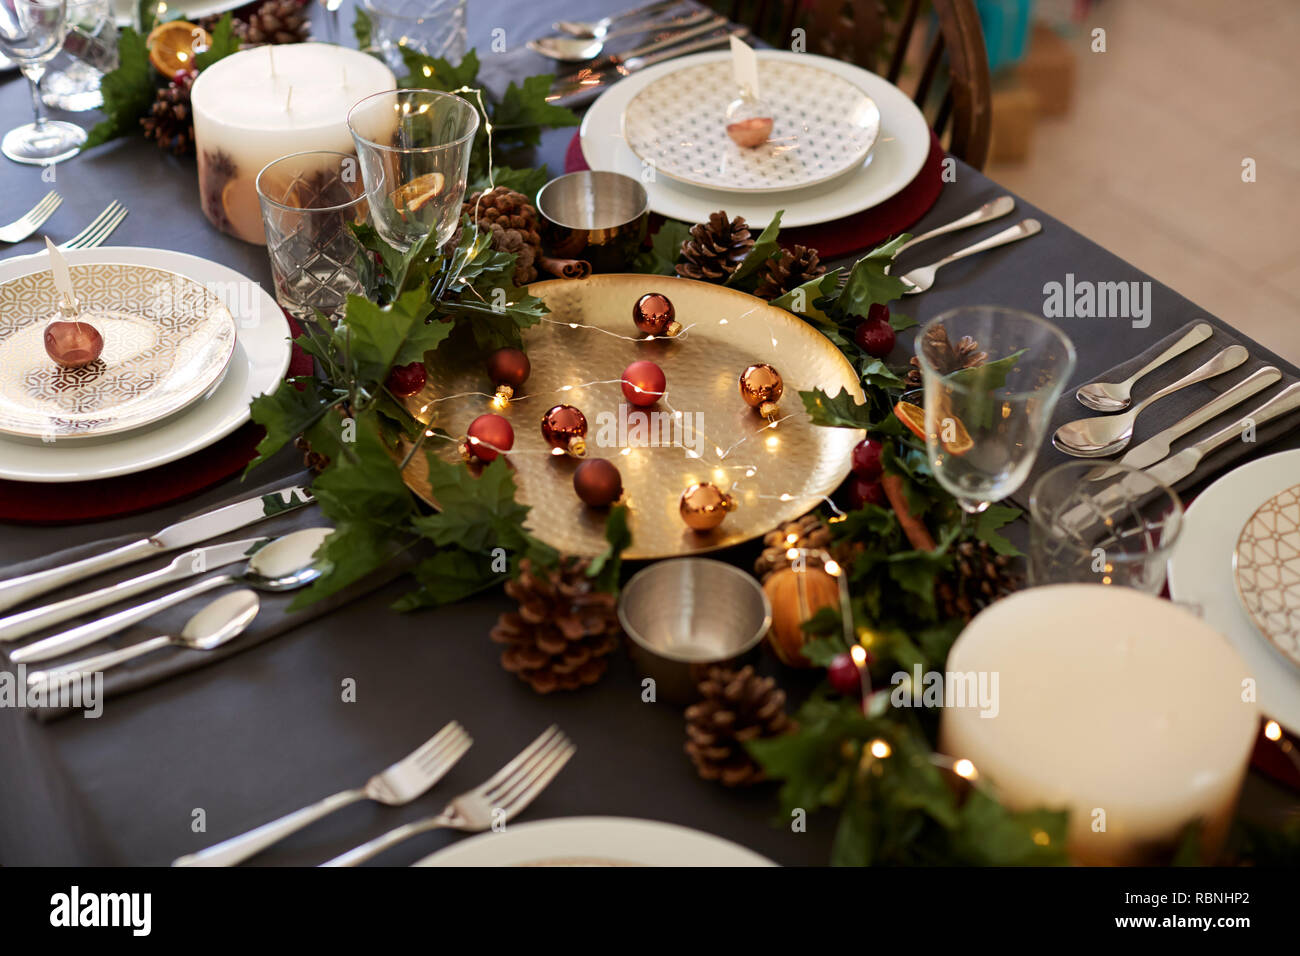 Weihnachten Tischdekoration mit weihnachtskugel name Card Inhaber arrangiert auf Platten, goldene Platte Mittelstück mit Kugeln, und Grüne und rote Tischdekorationen, Erhöhte Ansicht Stockfoto